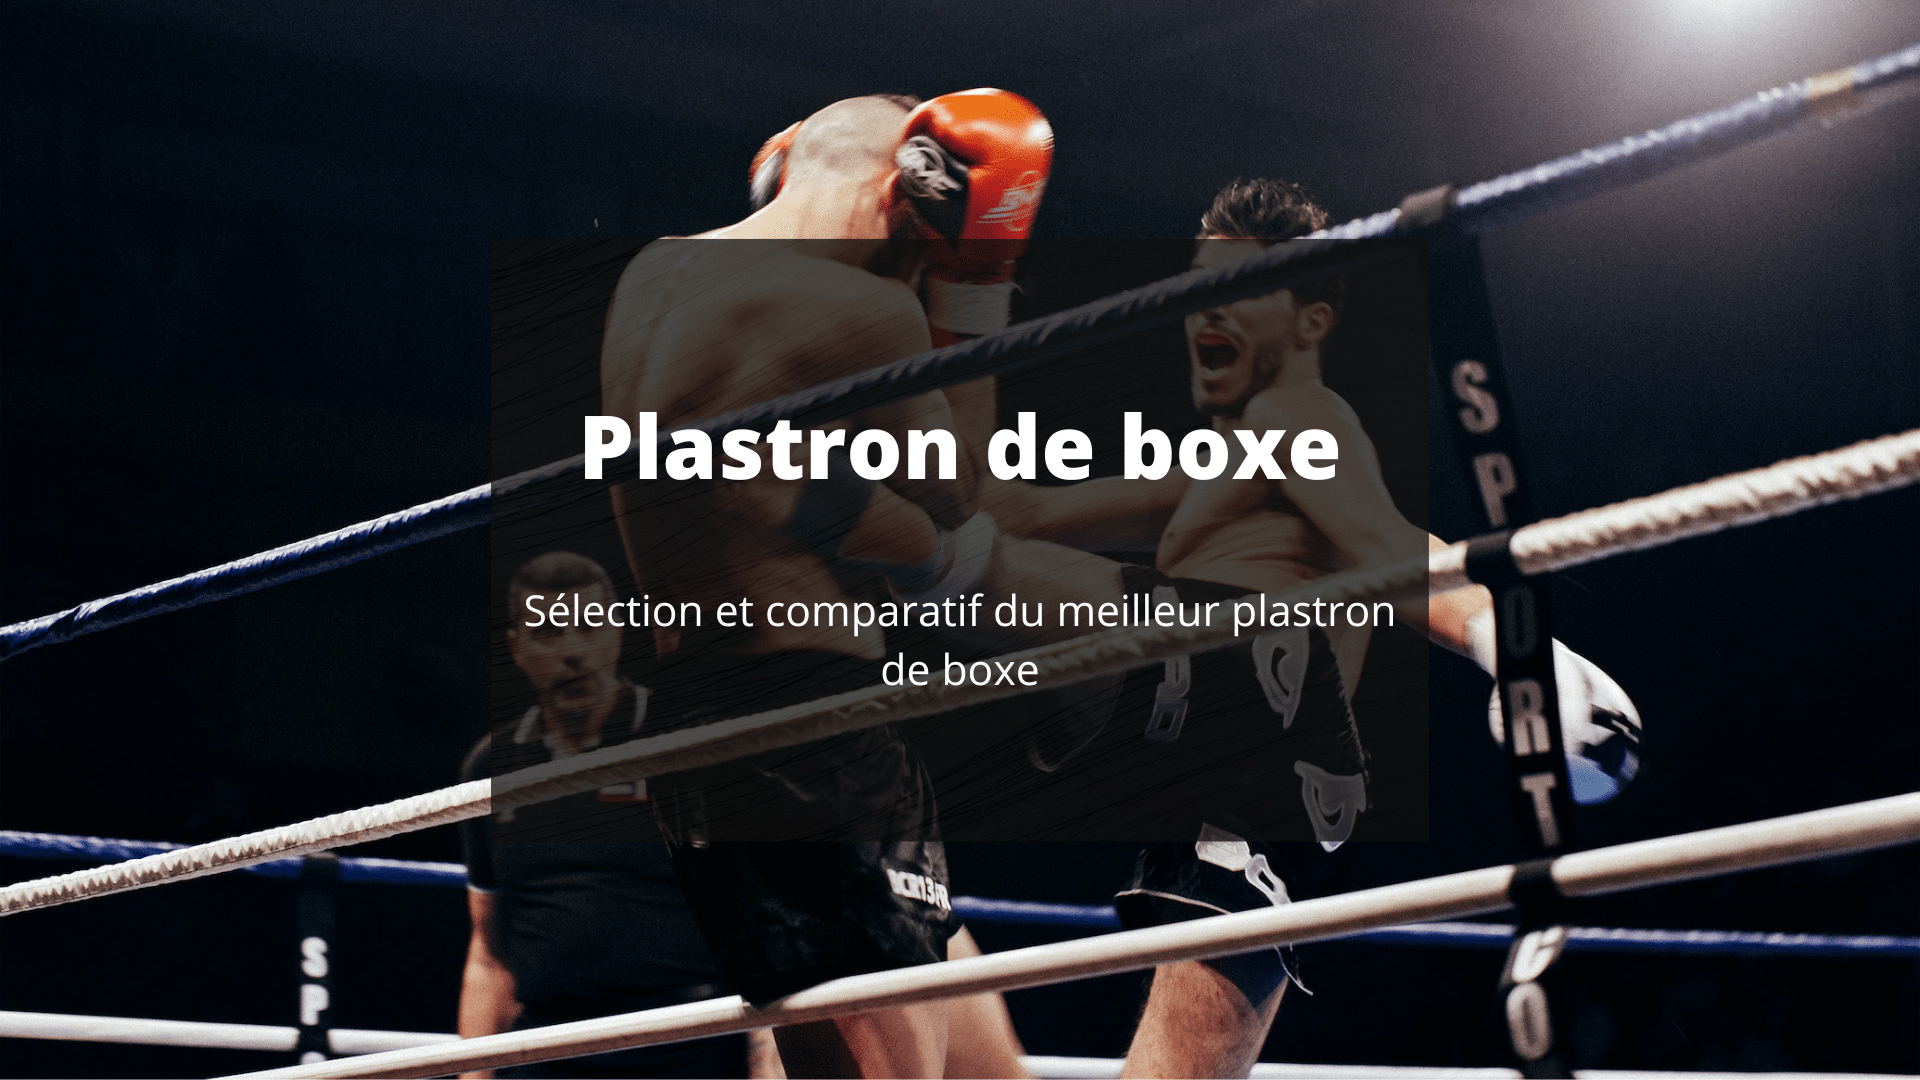 PLASTRON DE BOXE NOIR